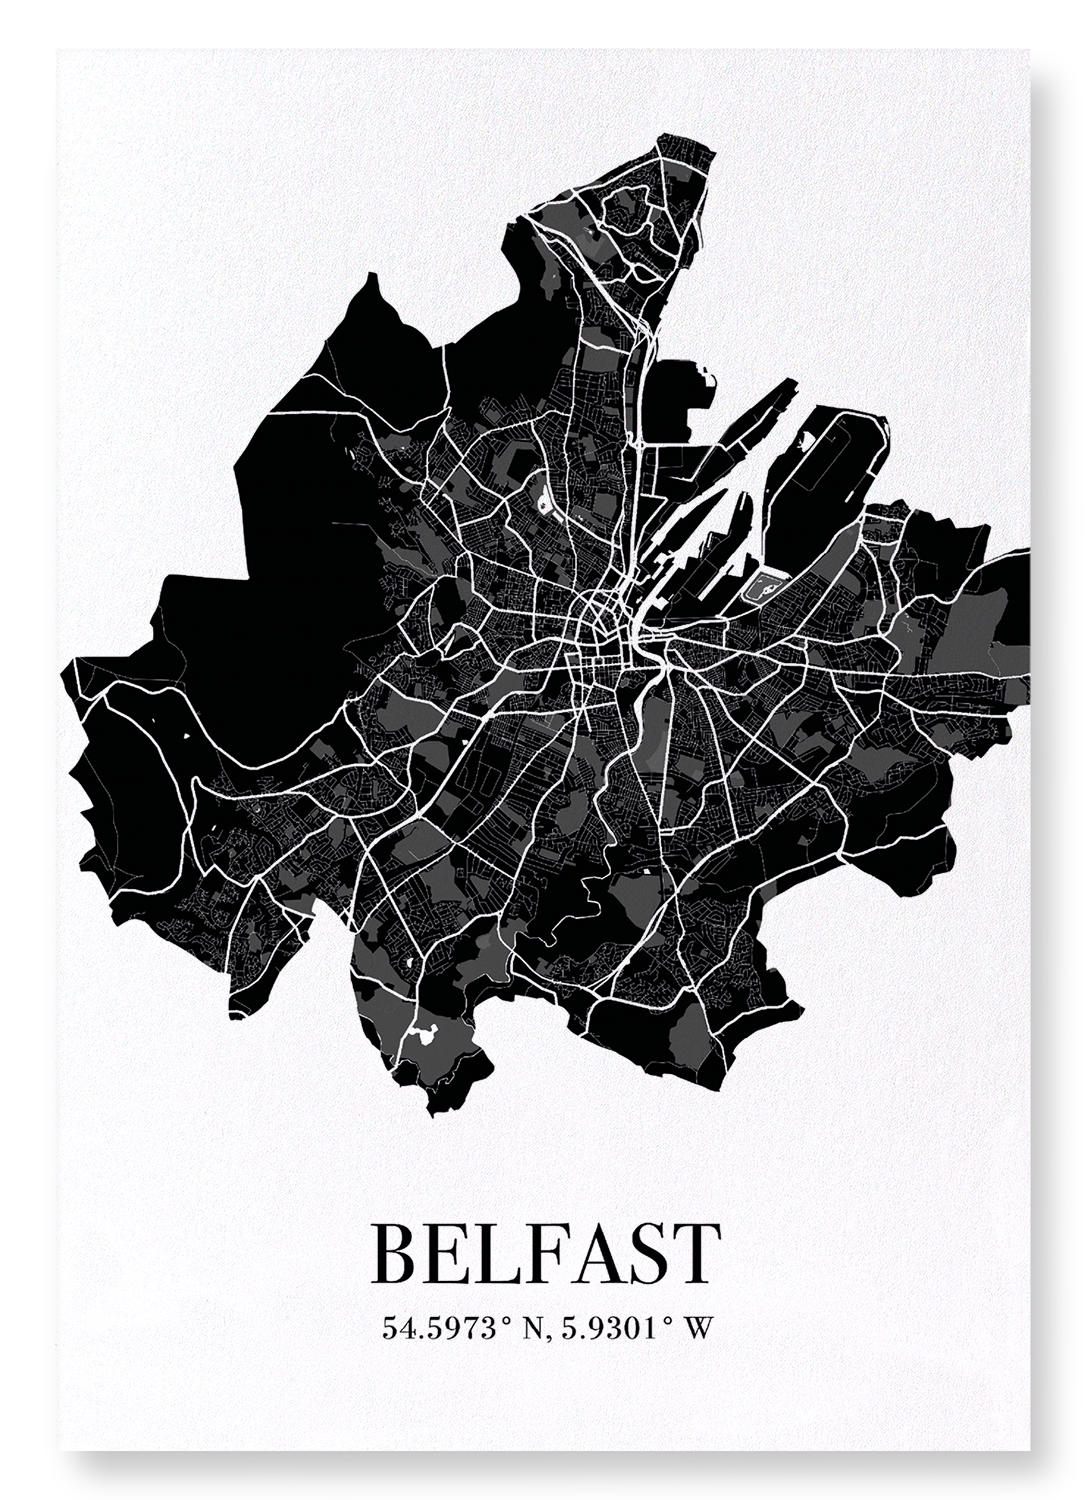 BELFAST CUTOUT: Map Cutout Art Print